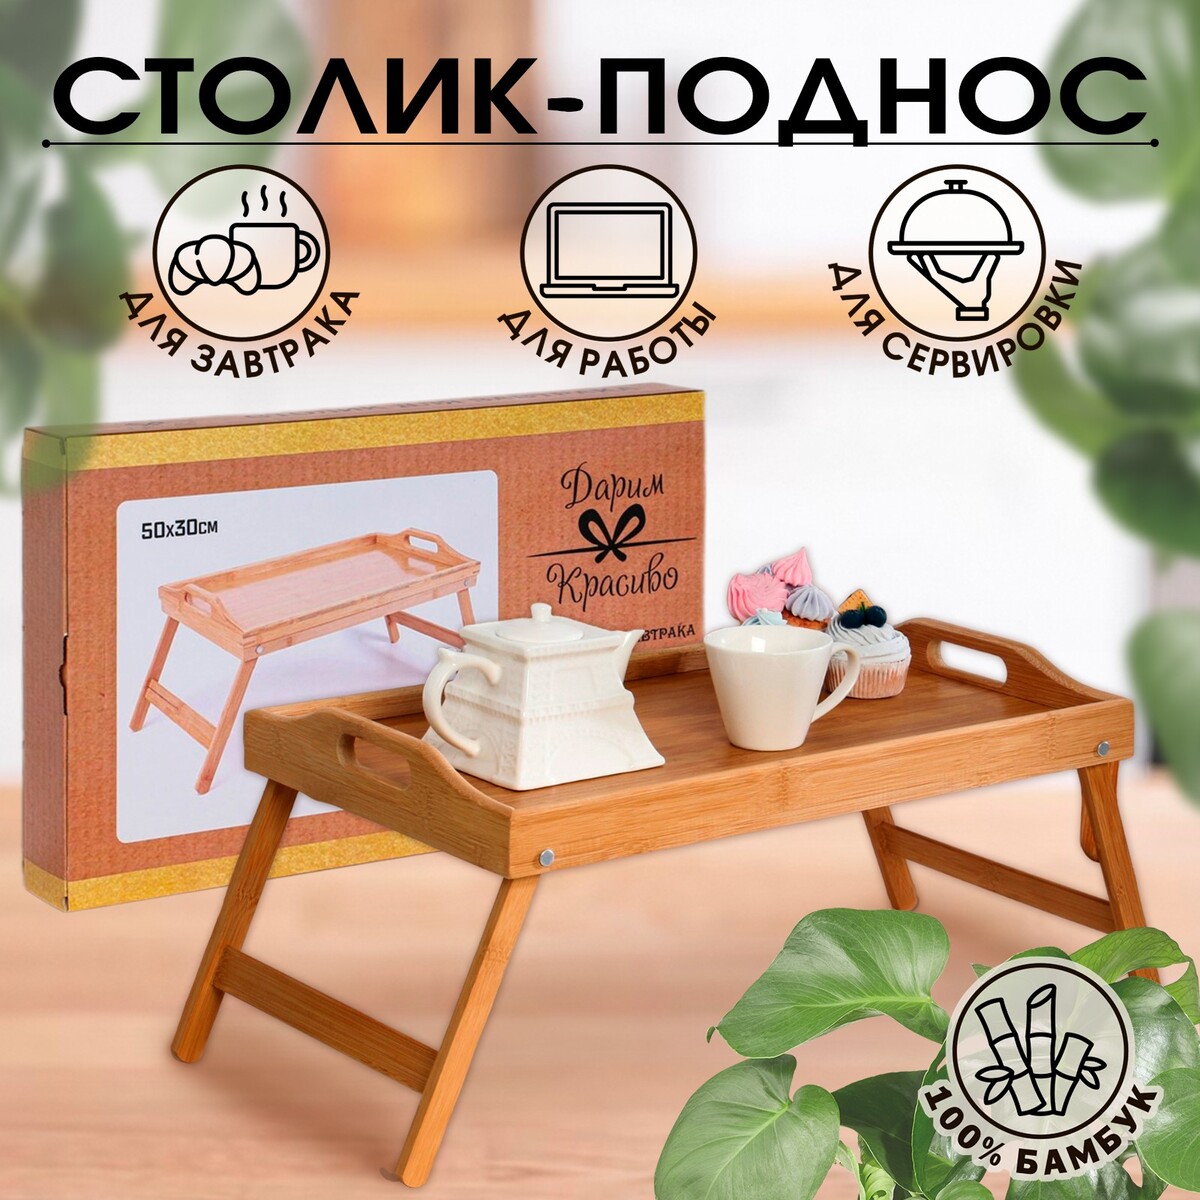 Столик - поднос для завтрака с ручками, складной, бамбук kett up столик поднос складной eco romantic